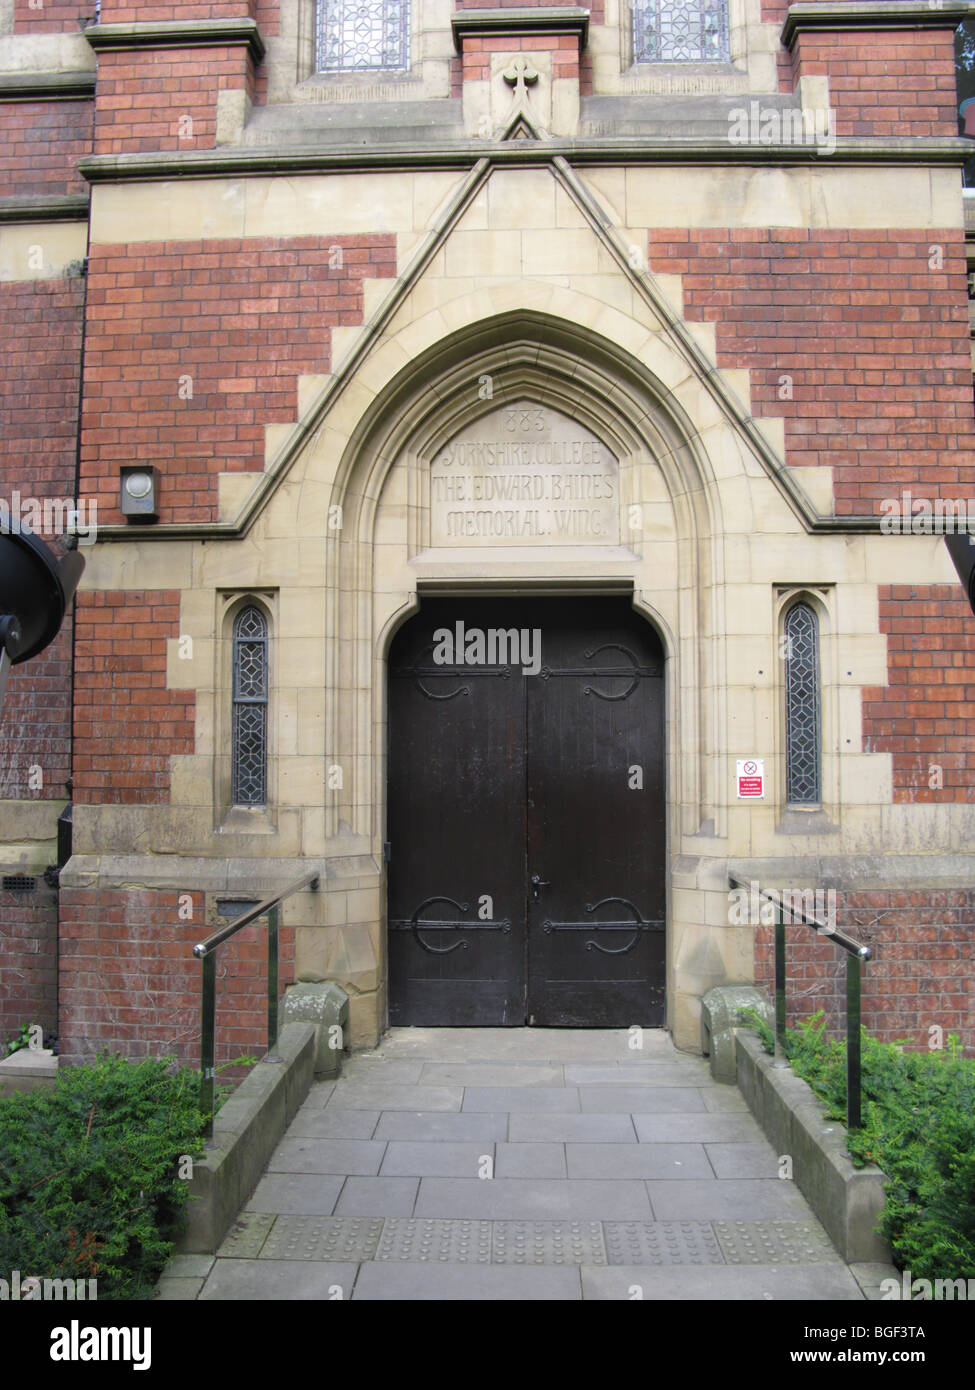 leeds university entrance to baines memorial wing  uk red brick redbrick door doorway arts and crafts movement Stock Photo